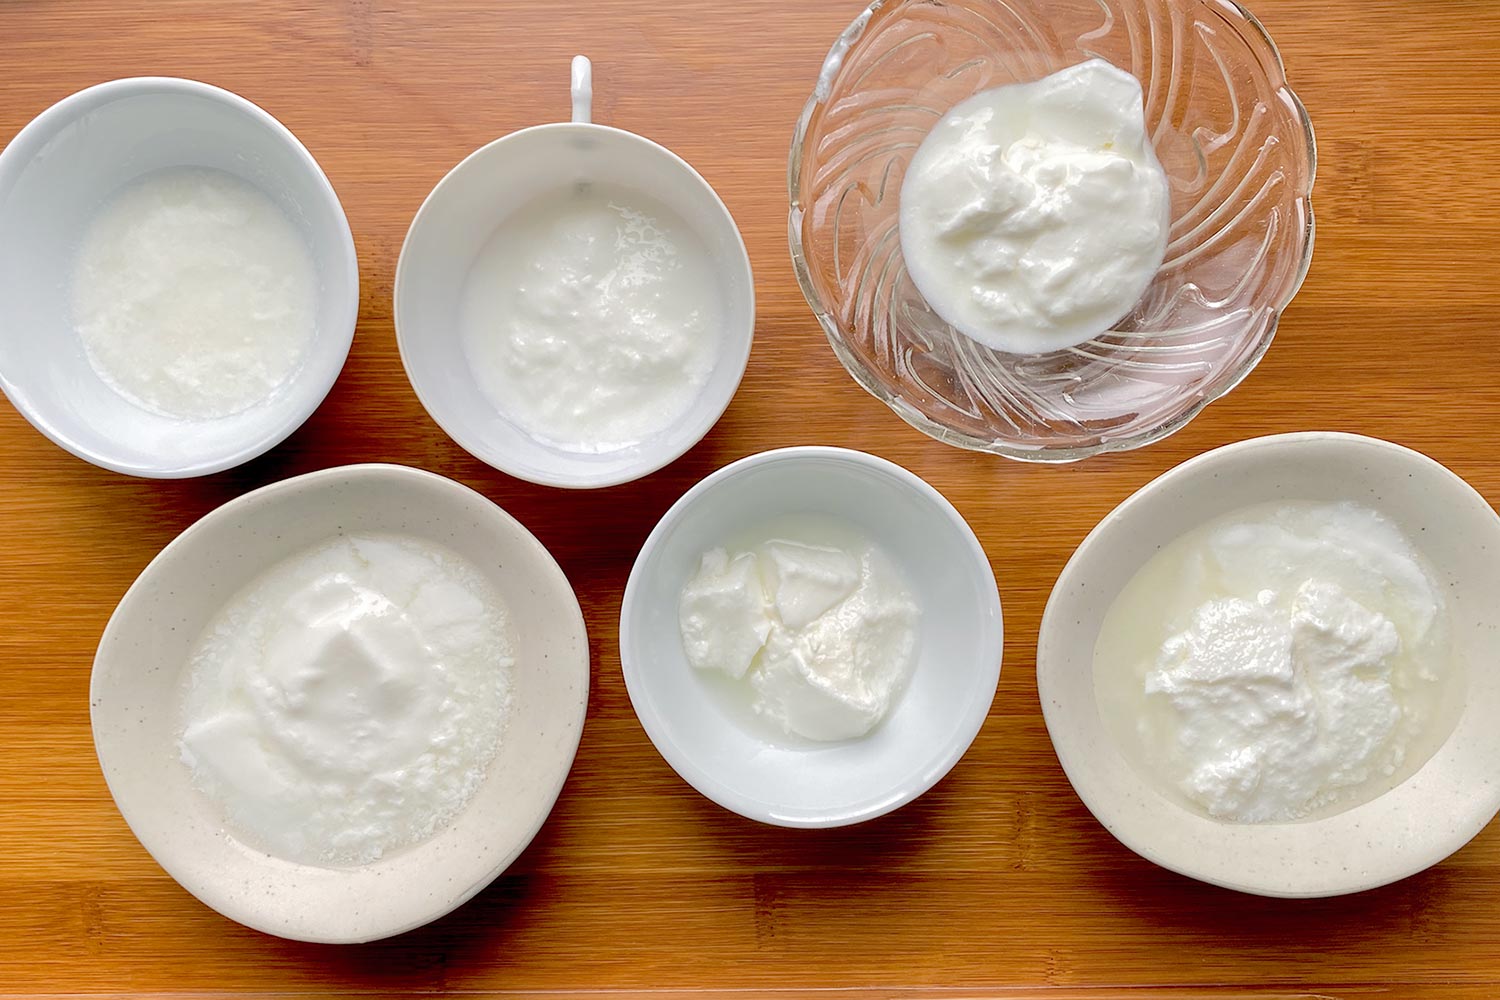 ［結論］牛乳を変えれば、自家製ヨーグルトの風味も変わる。